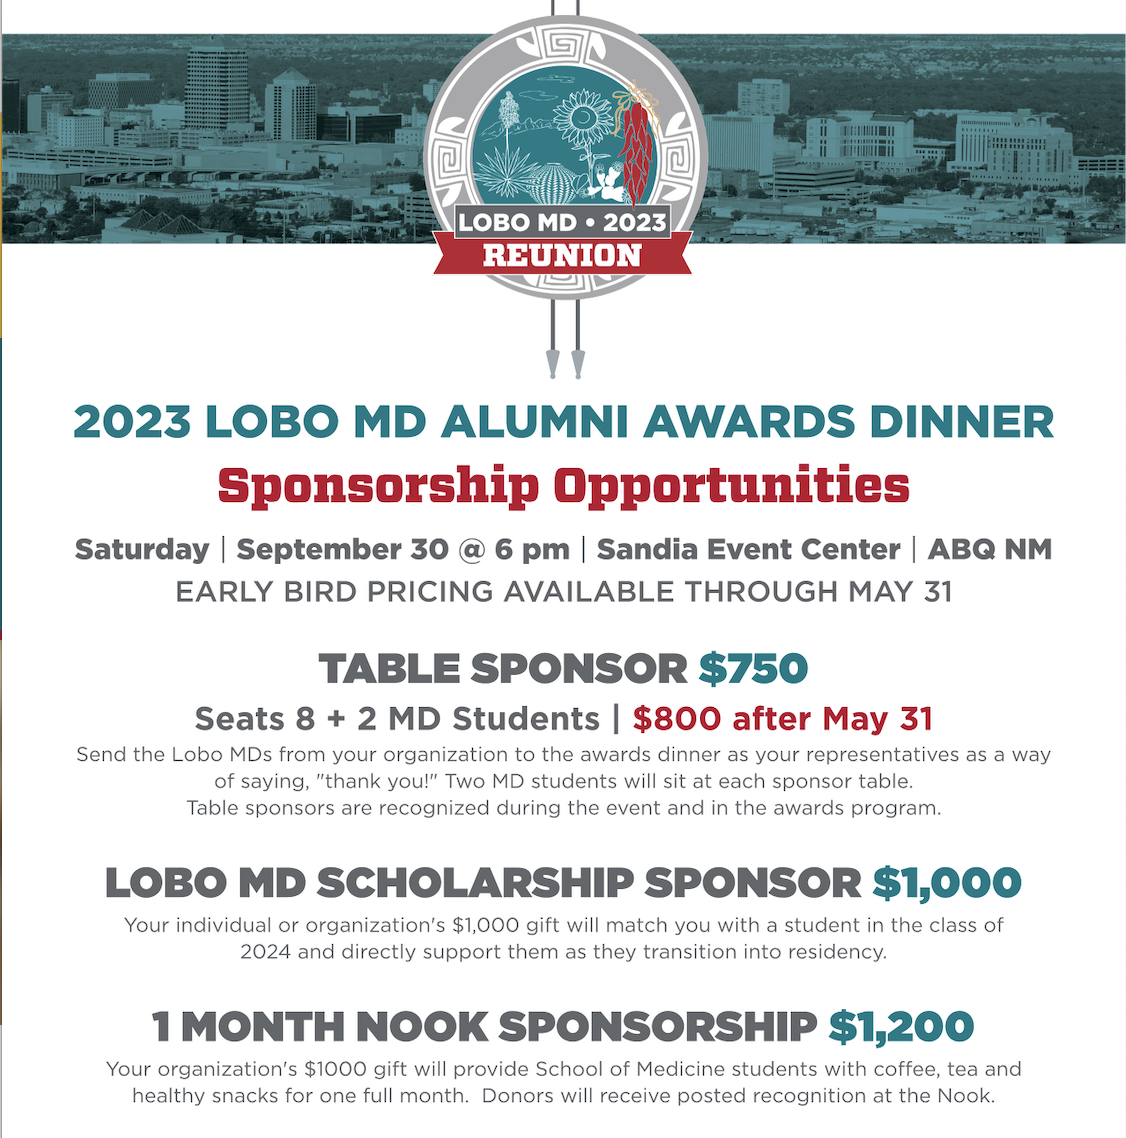 Возможности спонсорства для воссоединения Lobo MD 2023